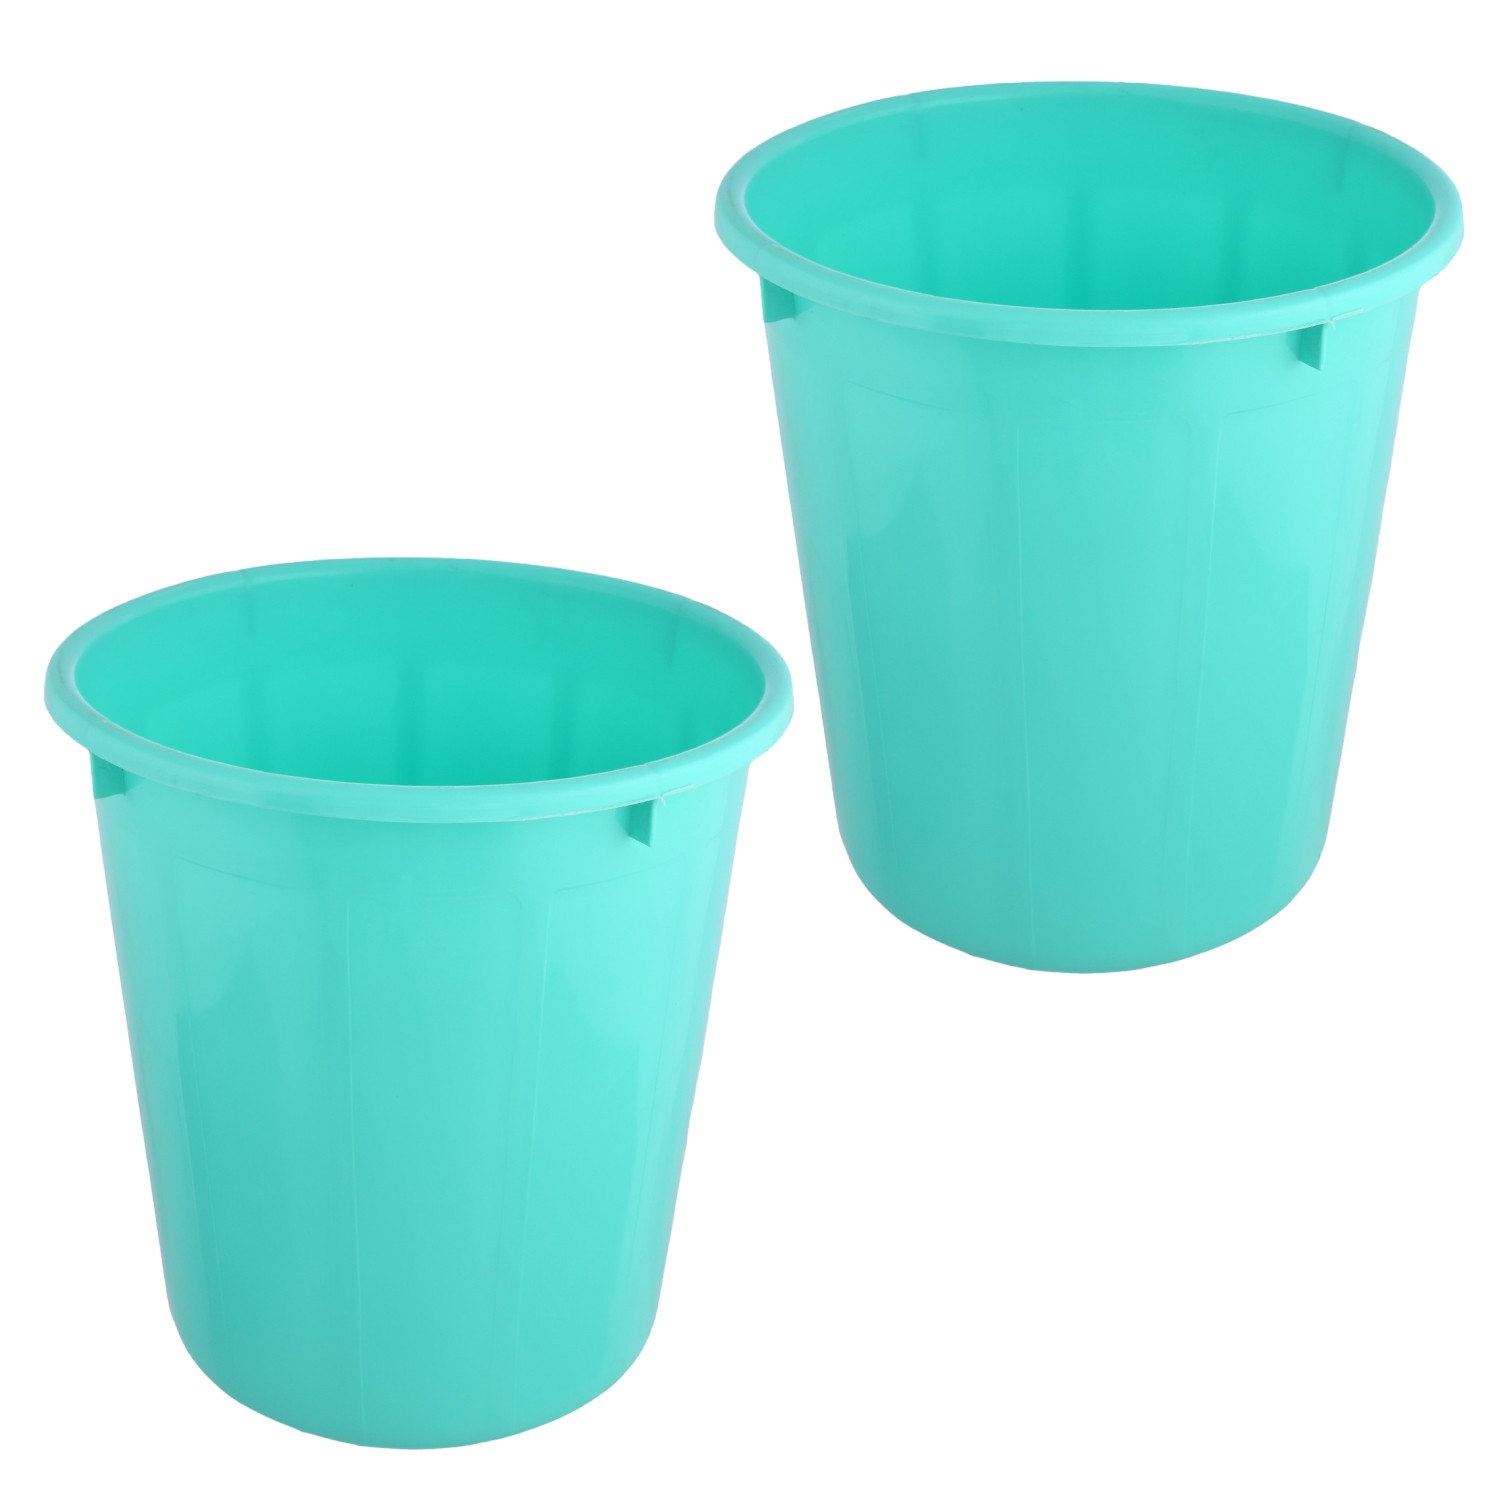 Kuber Industries Dustbin | Open Dustbin | Plastic Garbage Dustbin | Dustbin for Kitchen | Dustbin for Bathroom | Office Dustbin | Plain Sada Dustbin | 7 LTR | Green